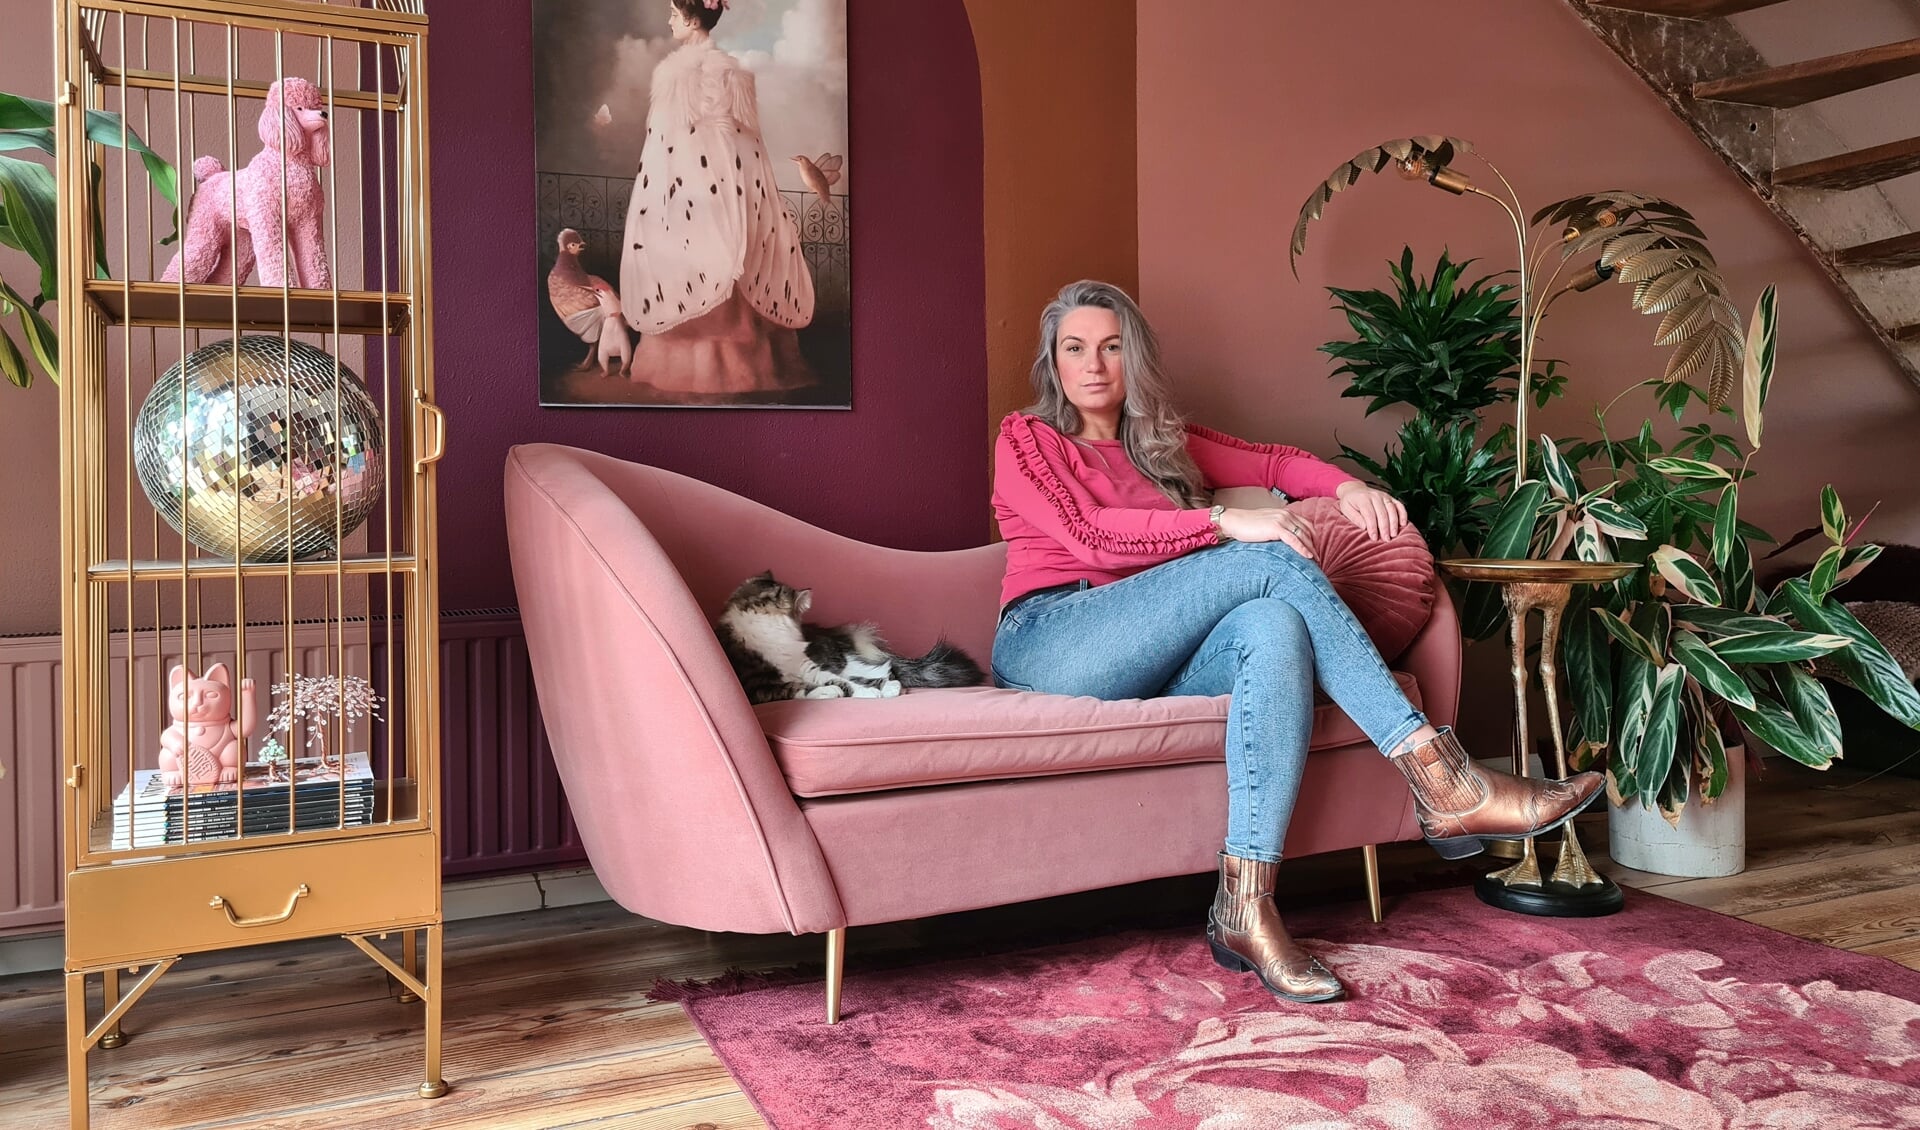 Interieur-influencer Mindy Schroor wordt blij van | RondOm lokaal nieuws online en huis-aan-huis uw regio